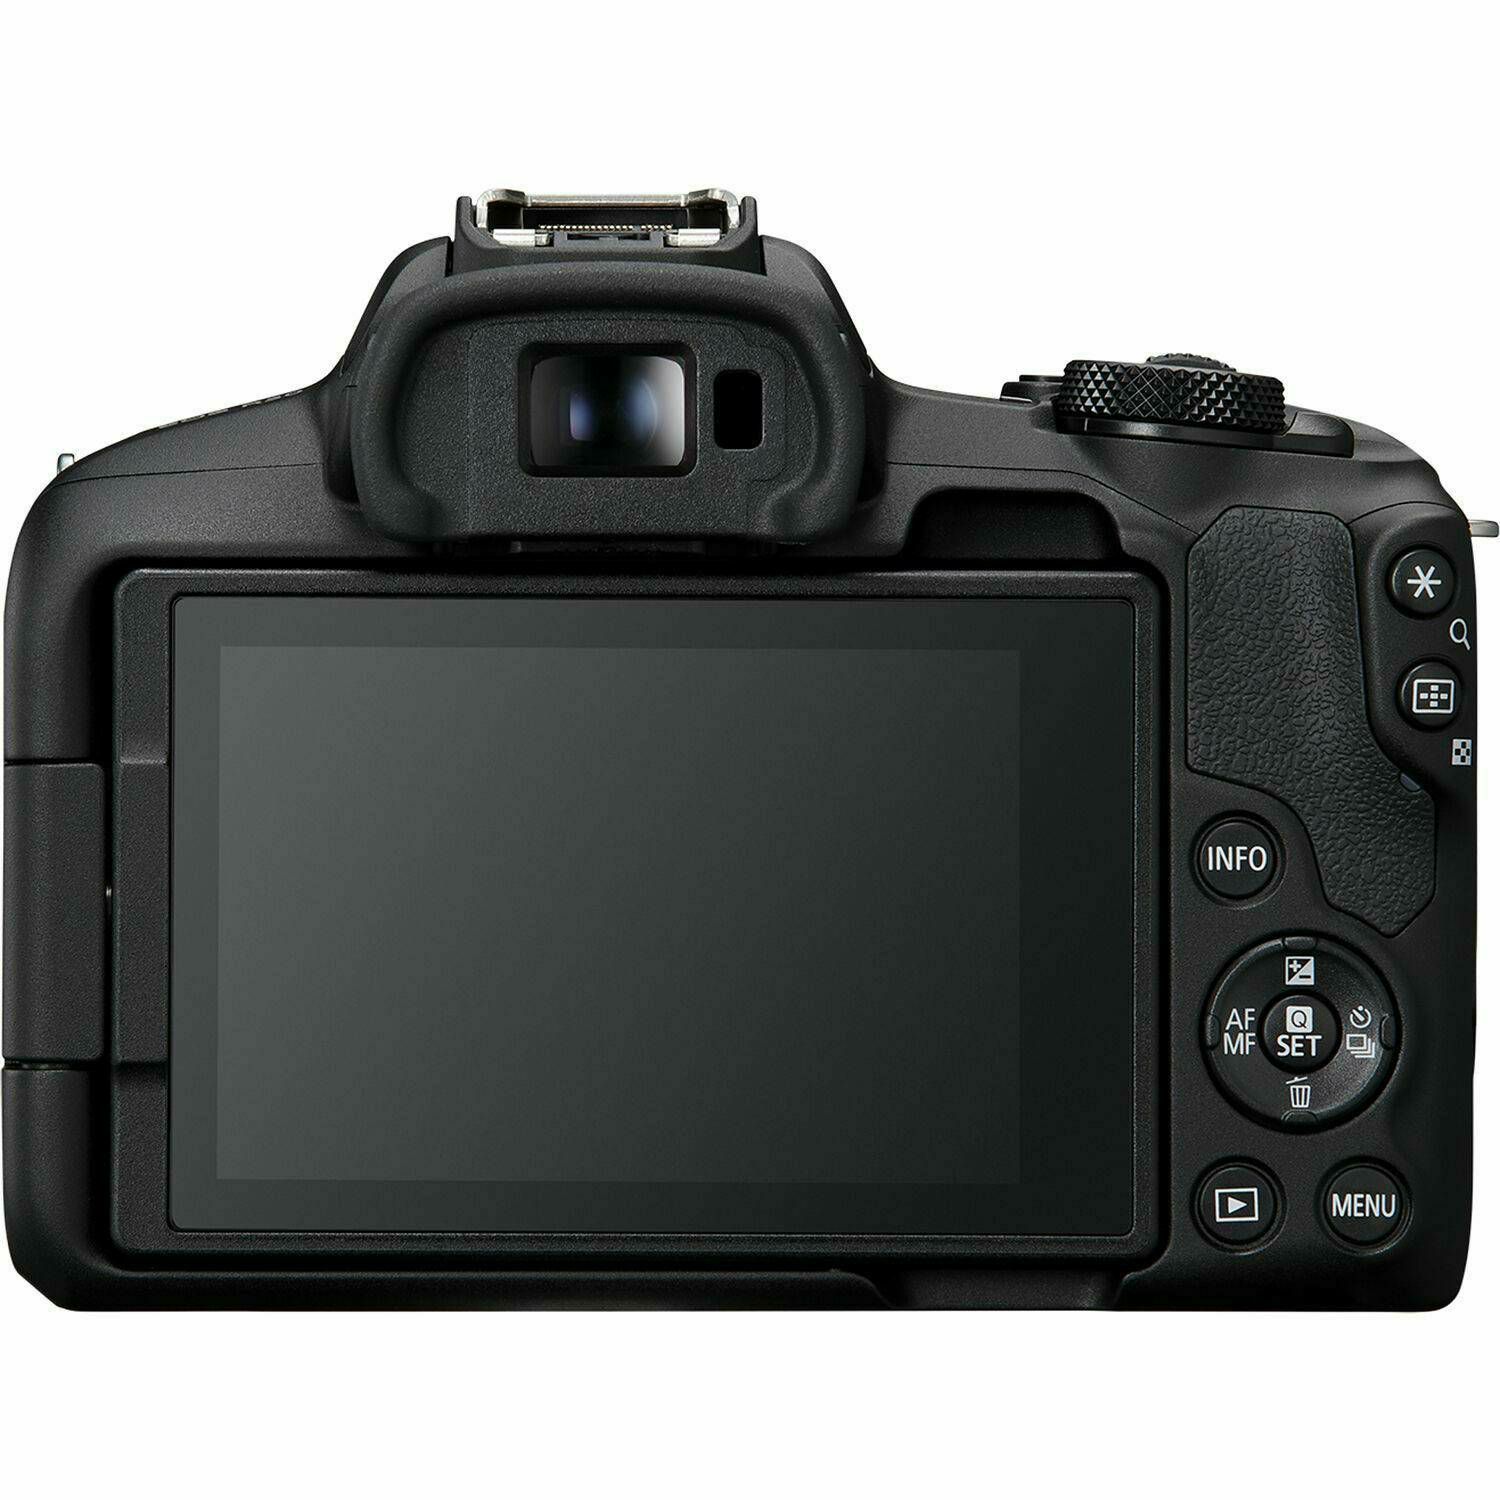 Canon EOS R50 + RF-S 18-45mm f/4.5-6.3 IS STM + GRATIS Canon LP-E17 baterija 